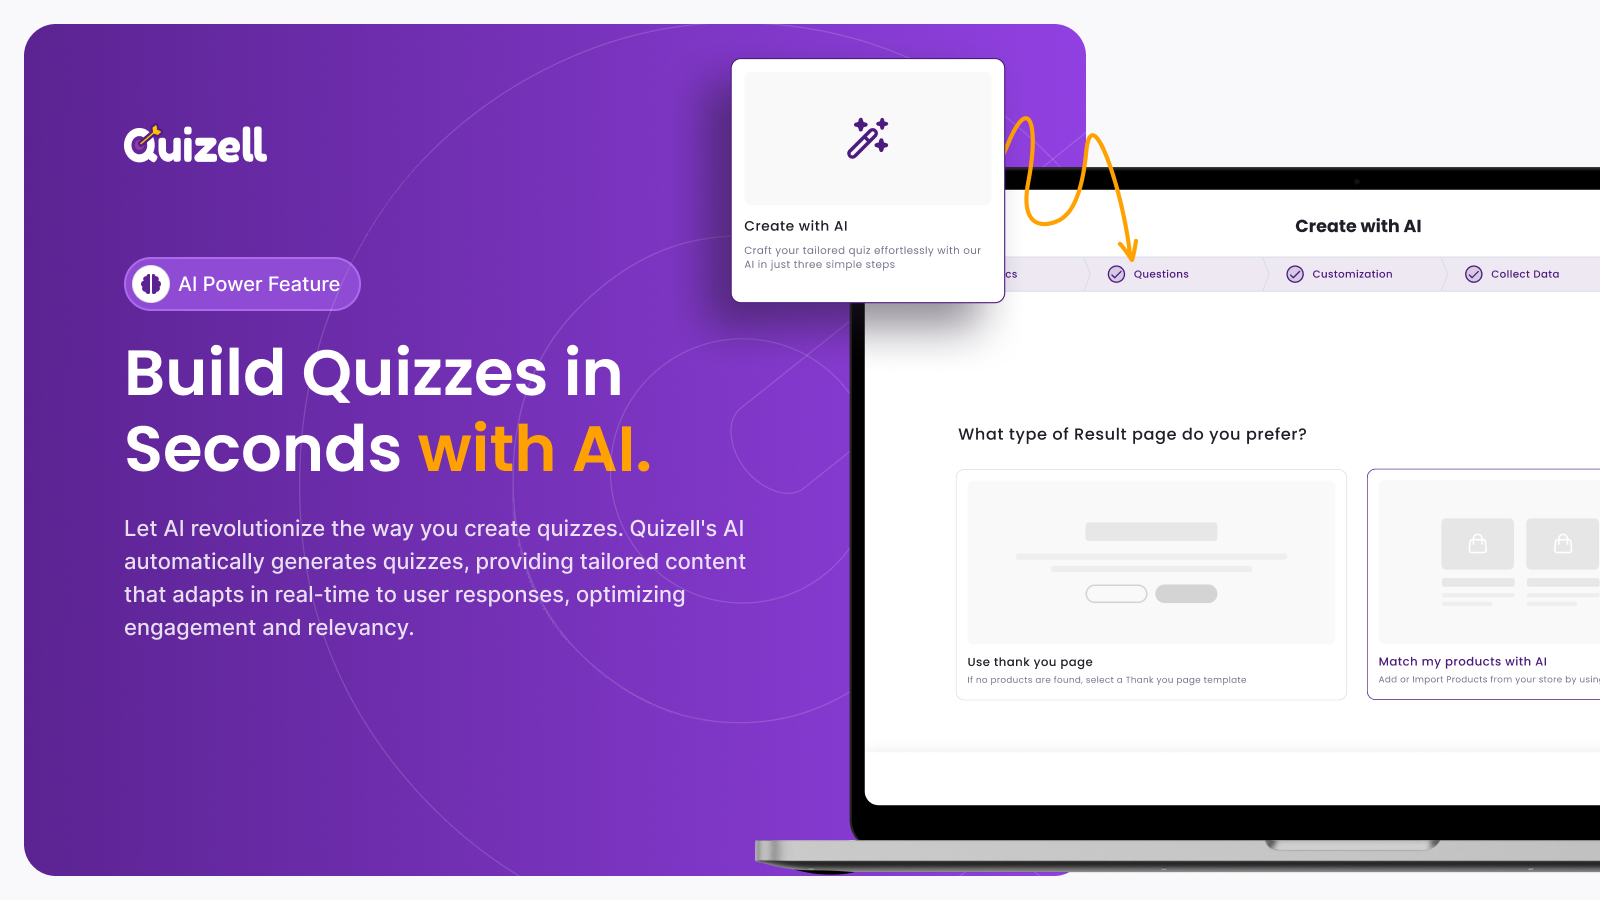 Bygg quiz på sekunder med AI.